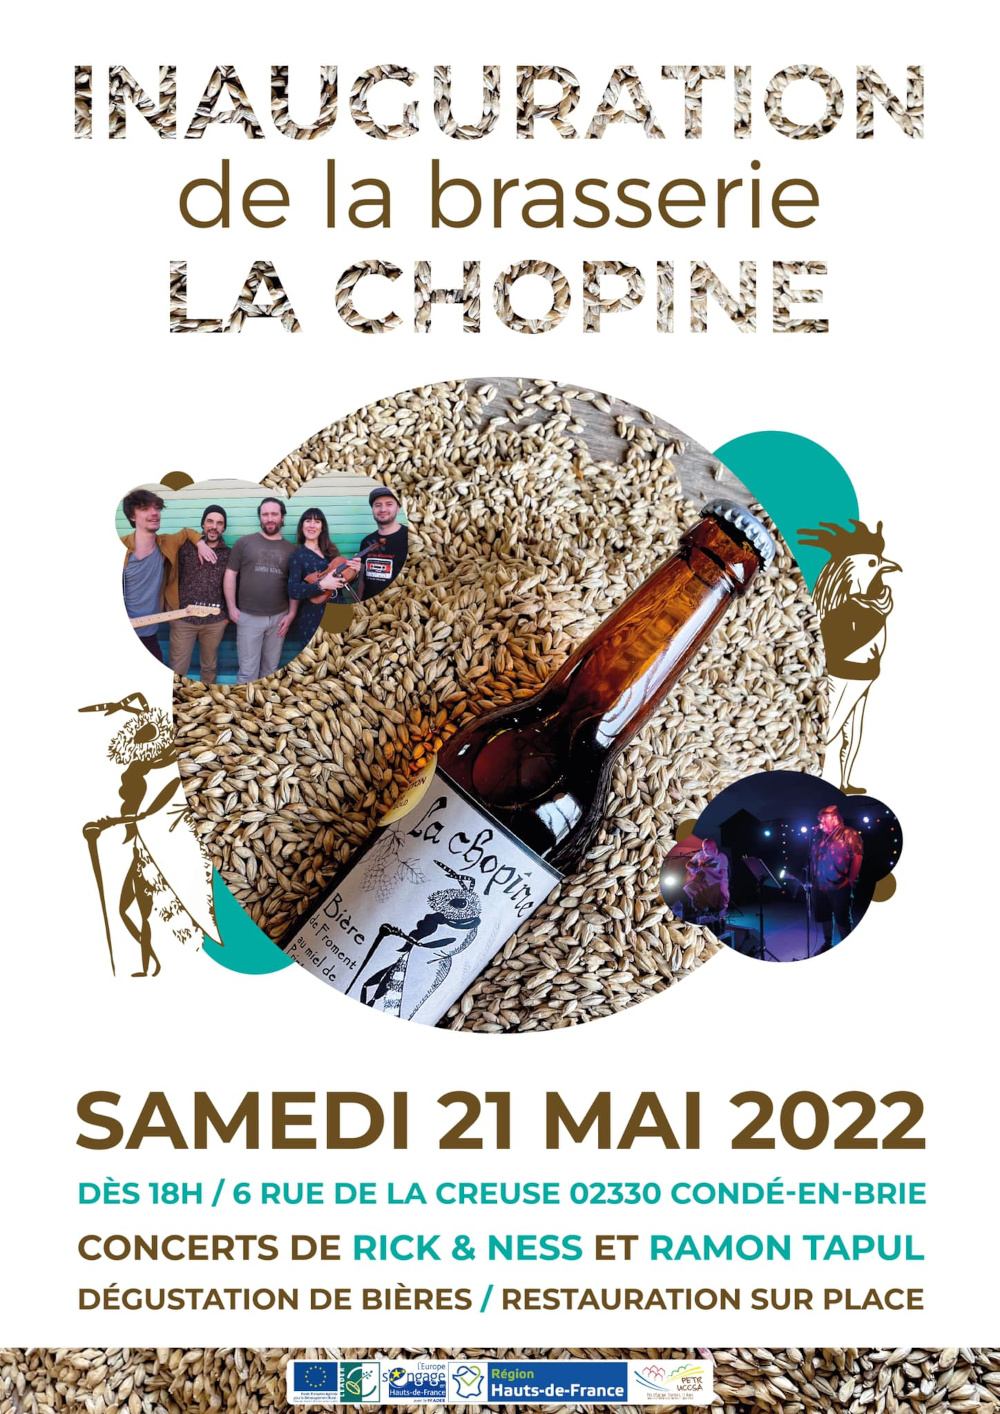 Inauguration de la brasserie La Chopine à Condé-en-brie